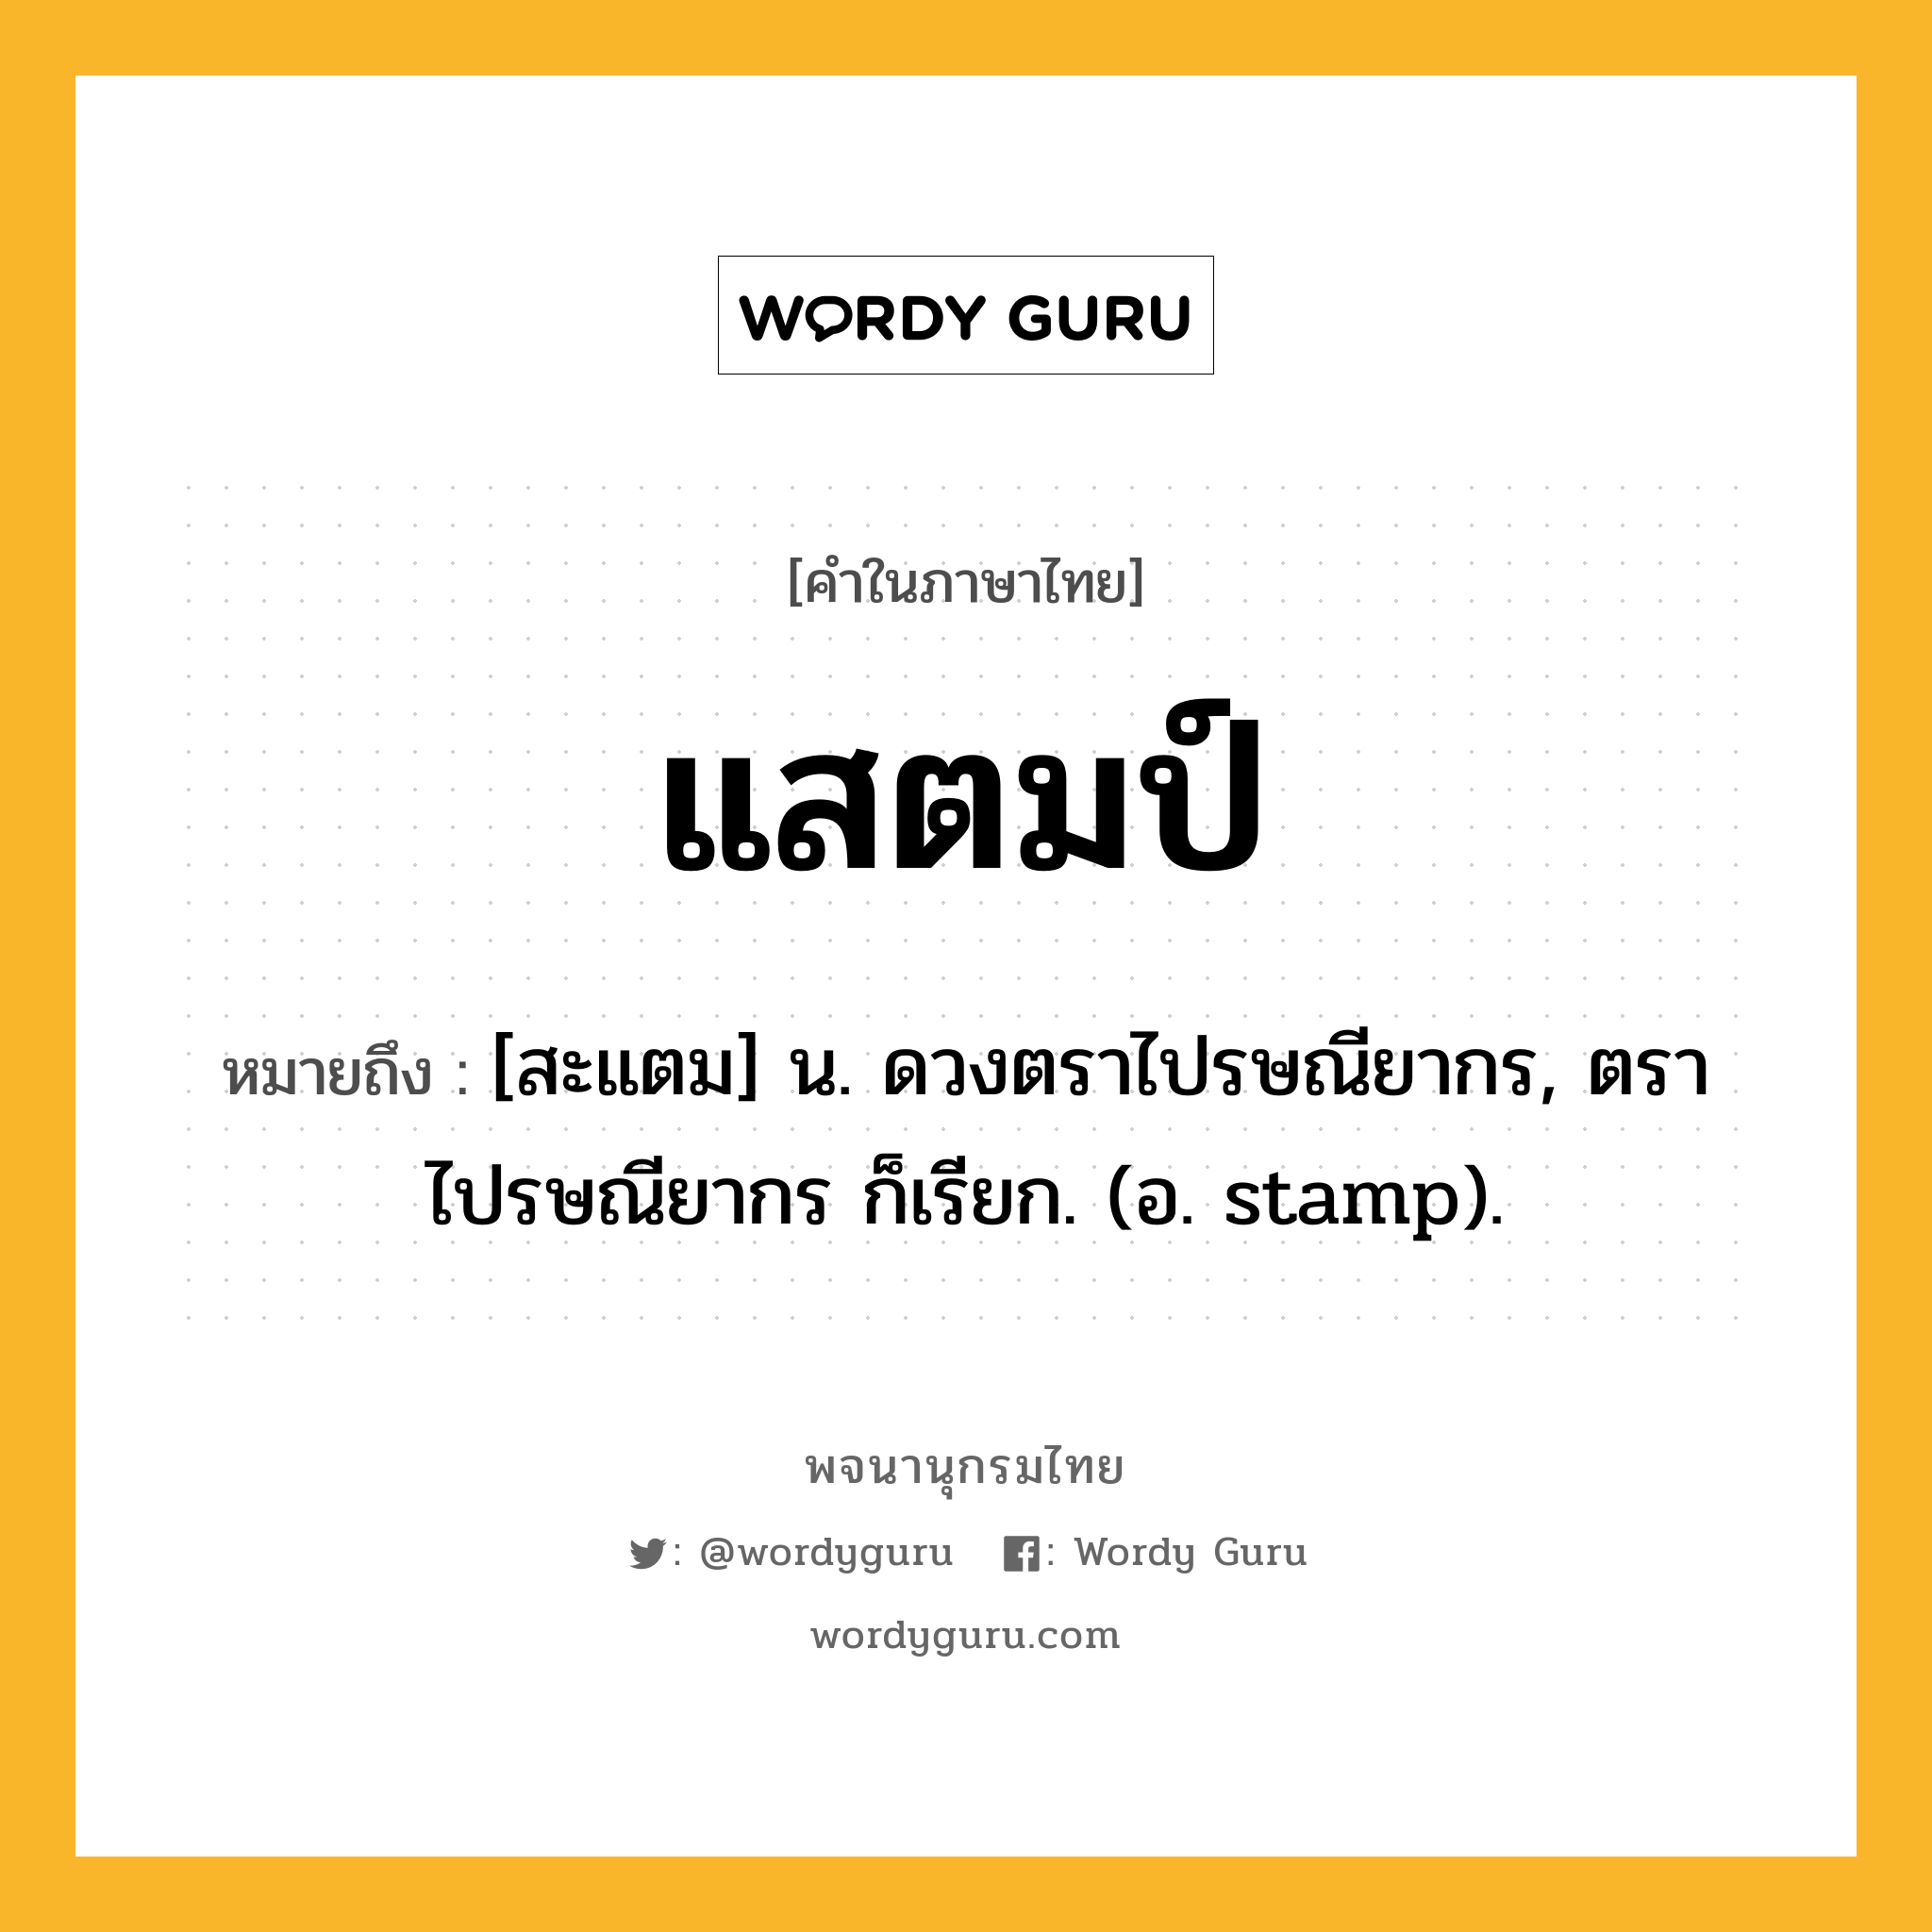 แสตมป์ ความหมาย หมายถึงอะไร?, คำในภาษาไทย แสตมป์ หมายถึง [สะแตม] น. ดวงตราไปรษณียากร, ตราไปรษณียากร ก็เรียก. (อ. stamp).